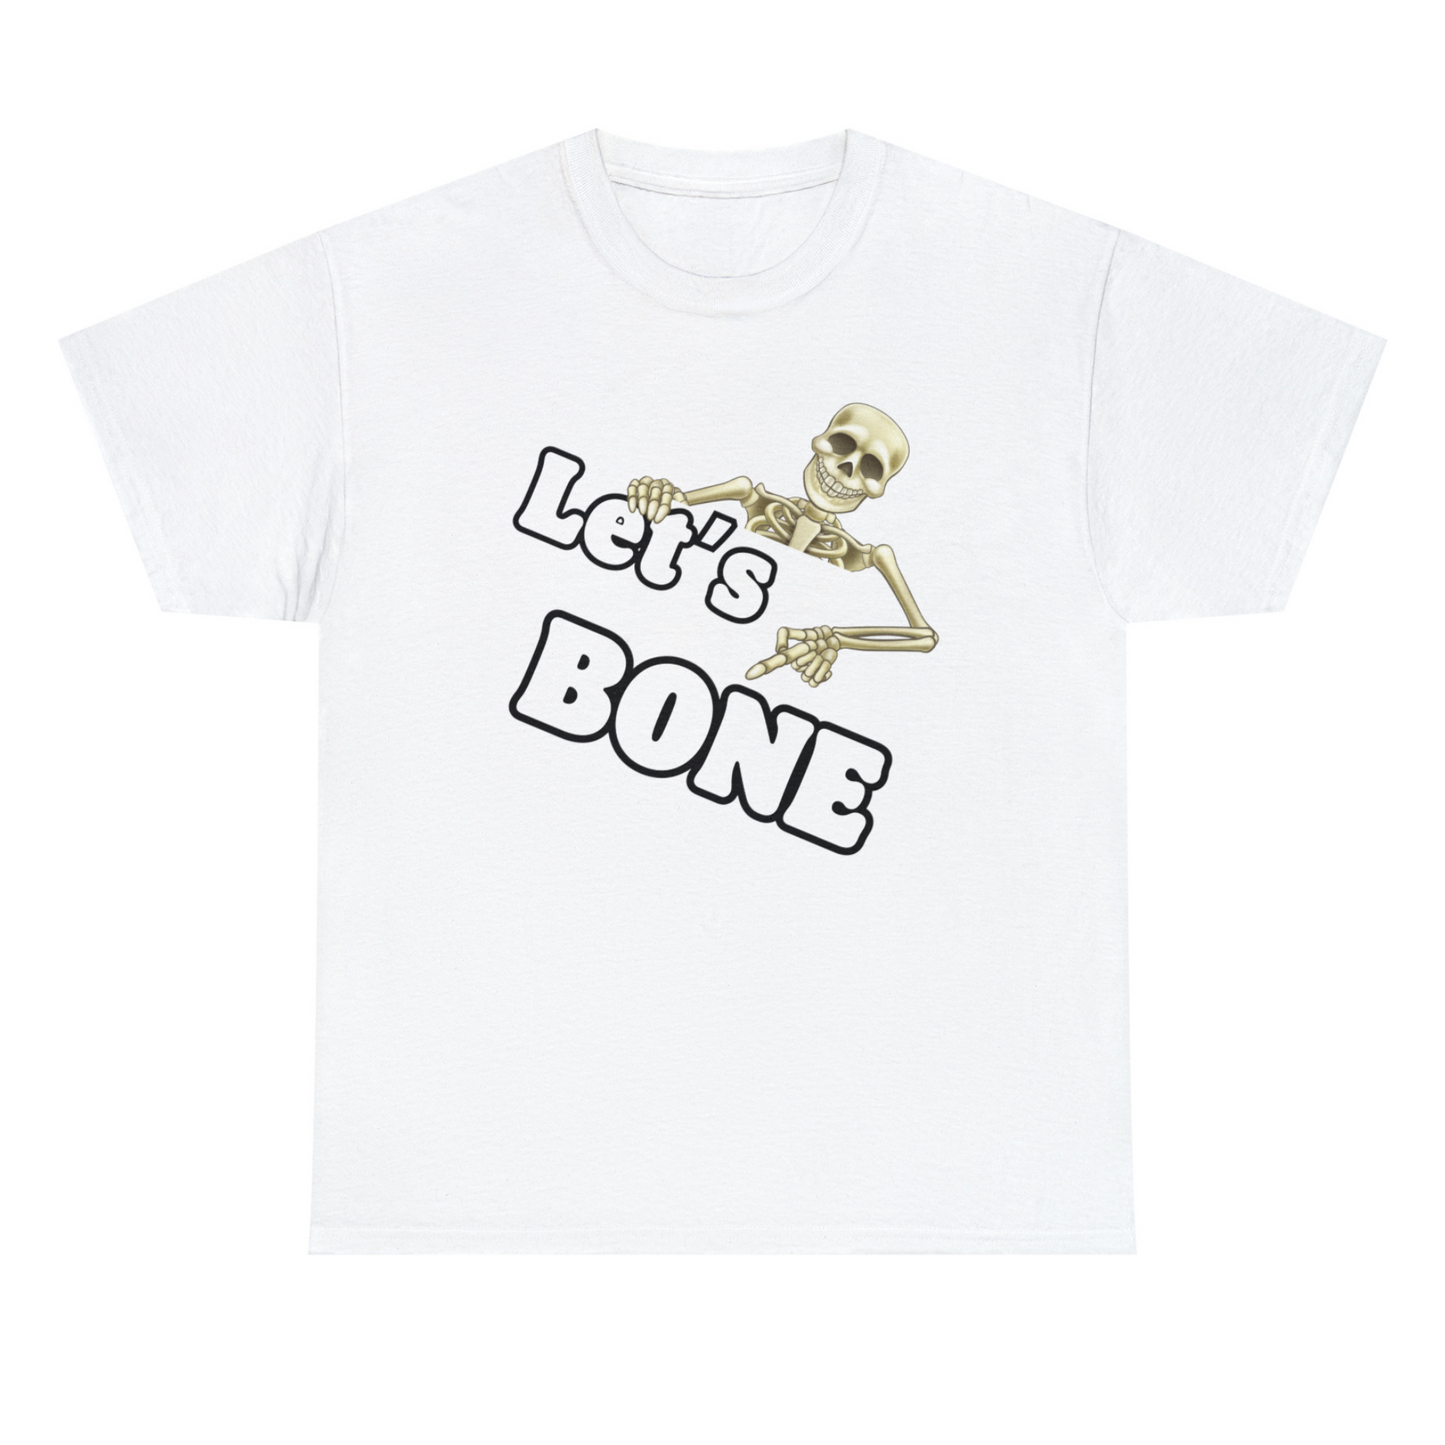 Let's Bone